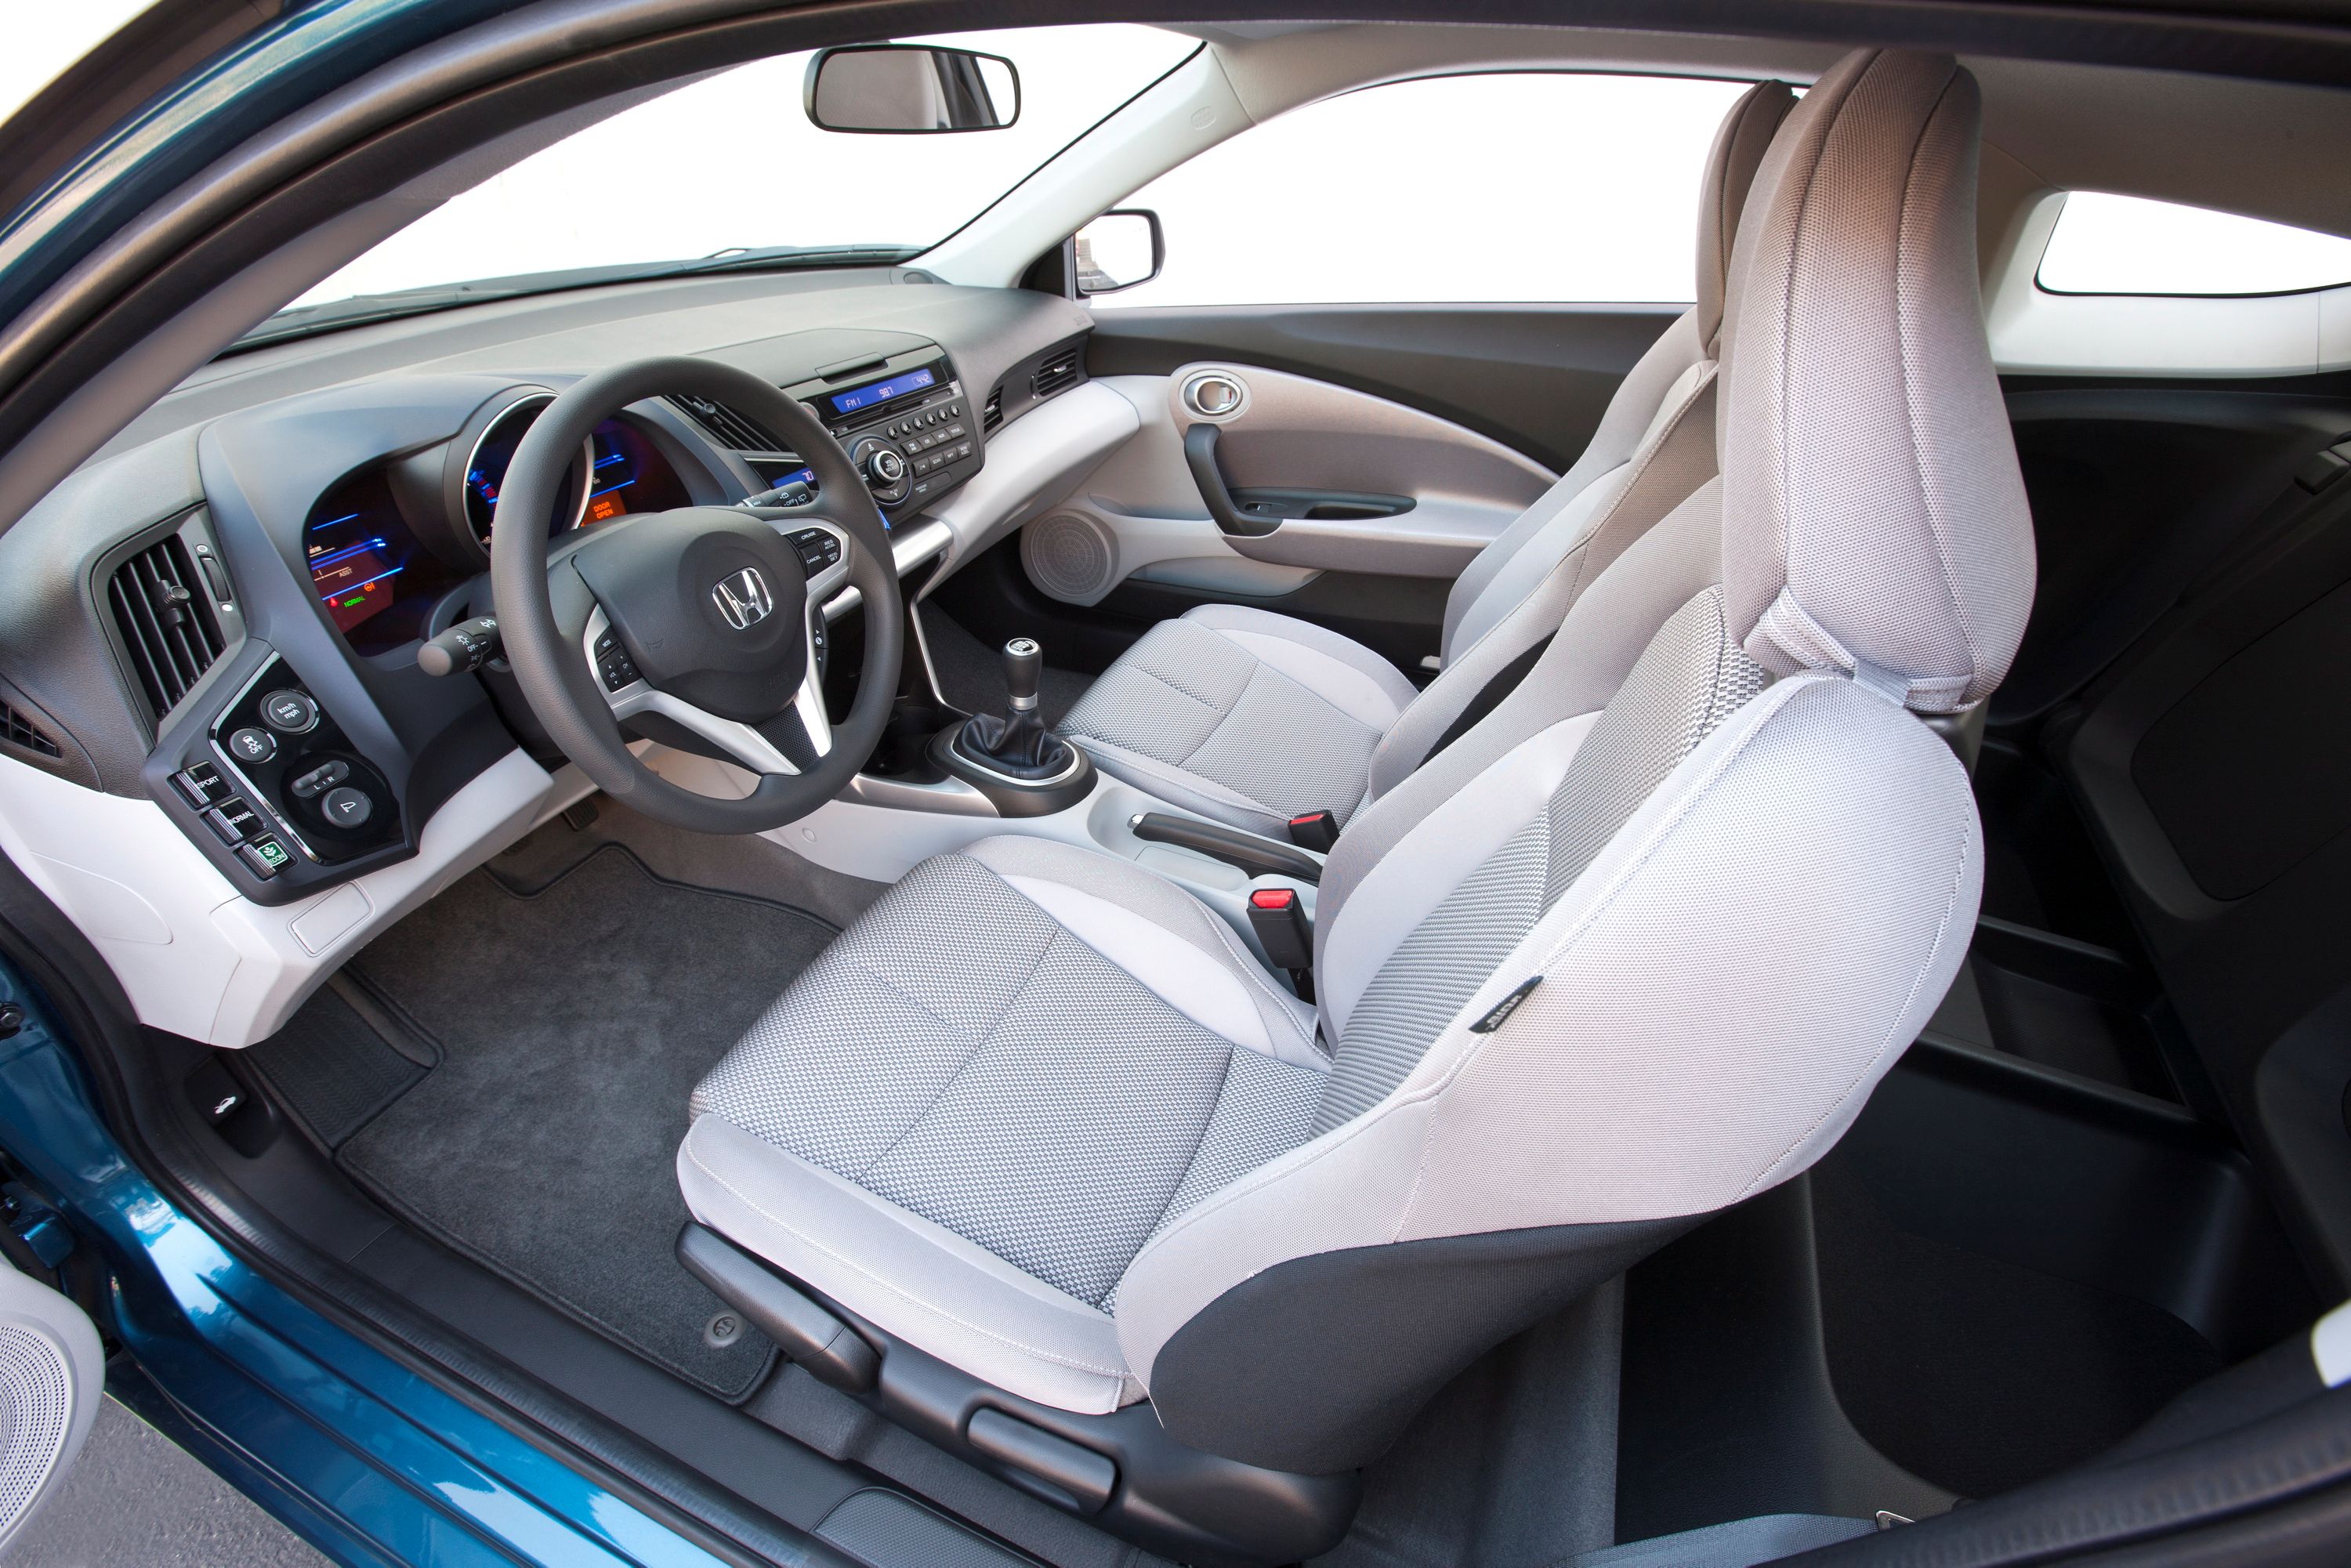 2012 Honda CRZ Hybrid Interior